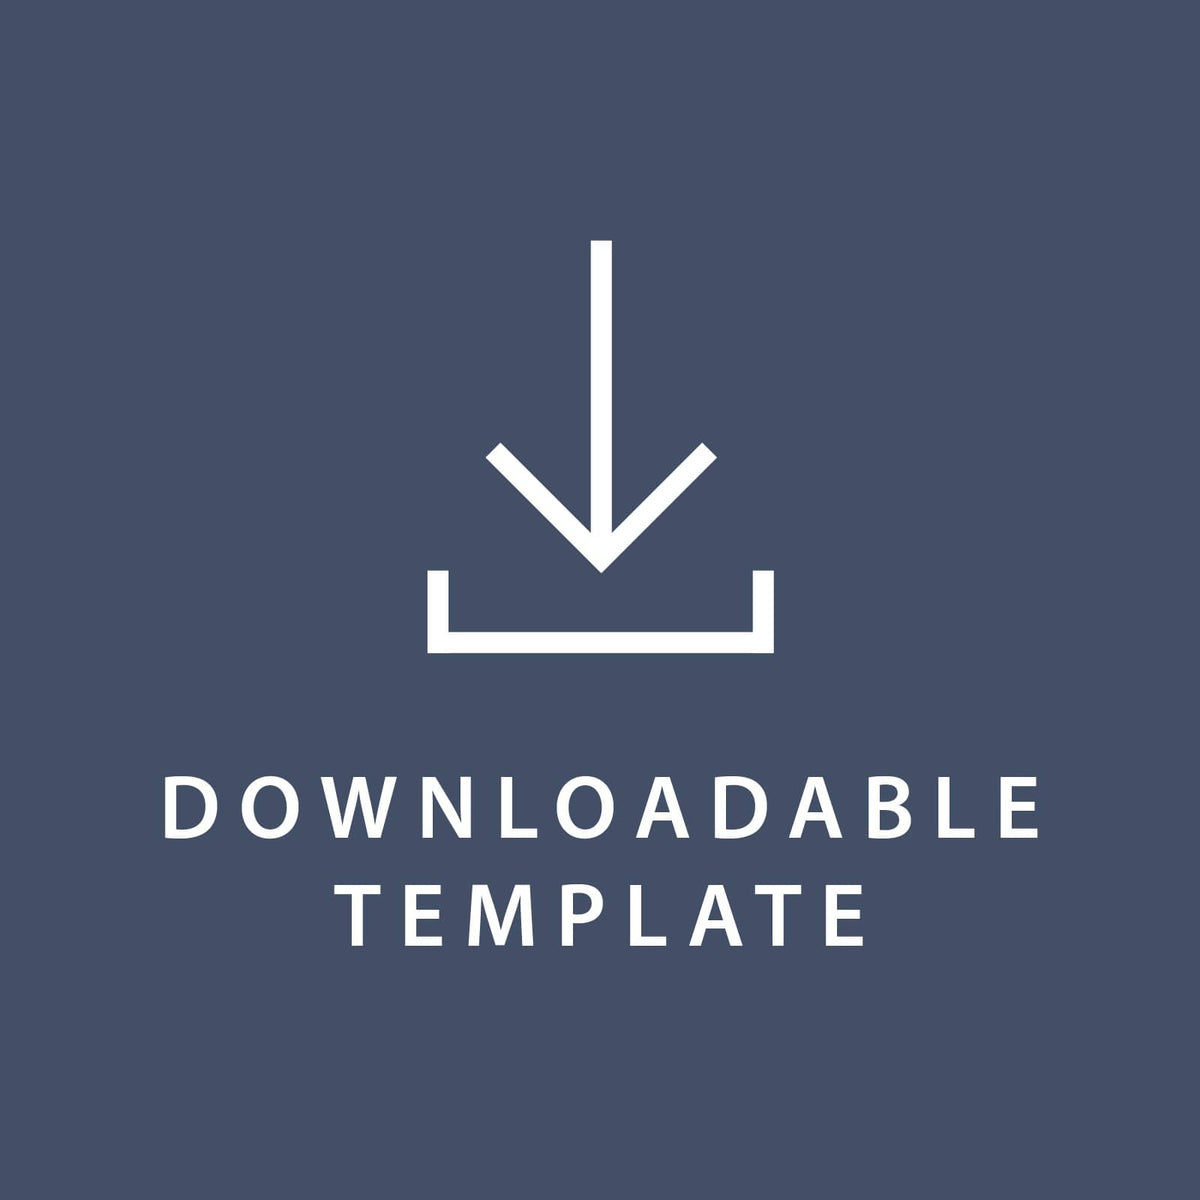 Template for 5.5 x 8.5 Invitations Gartner Studios Template tmplt0275